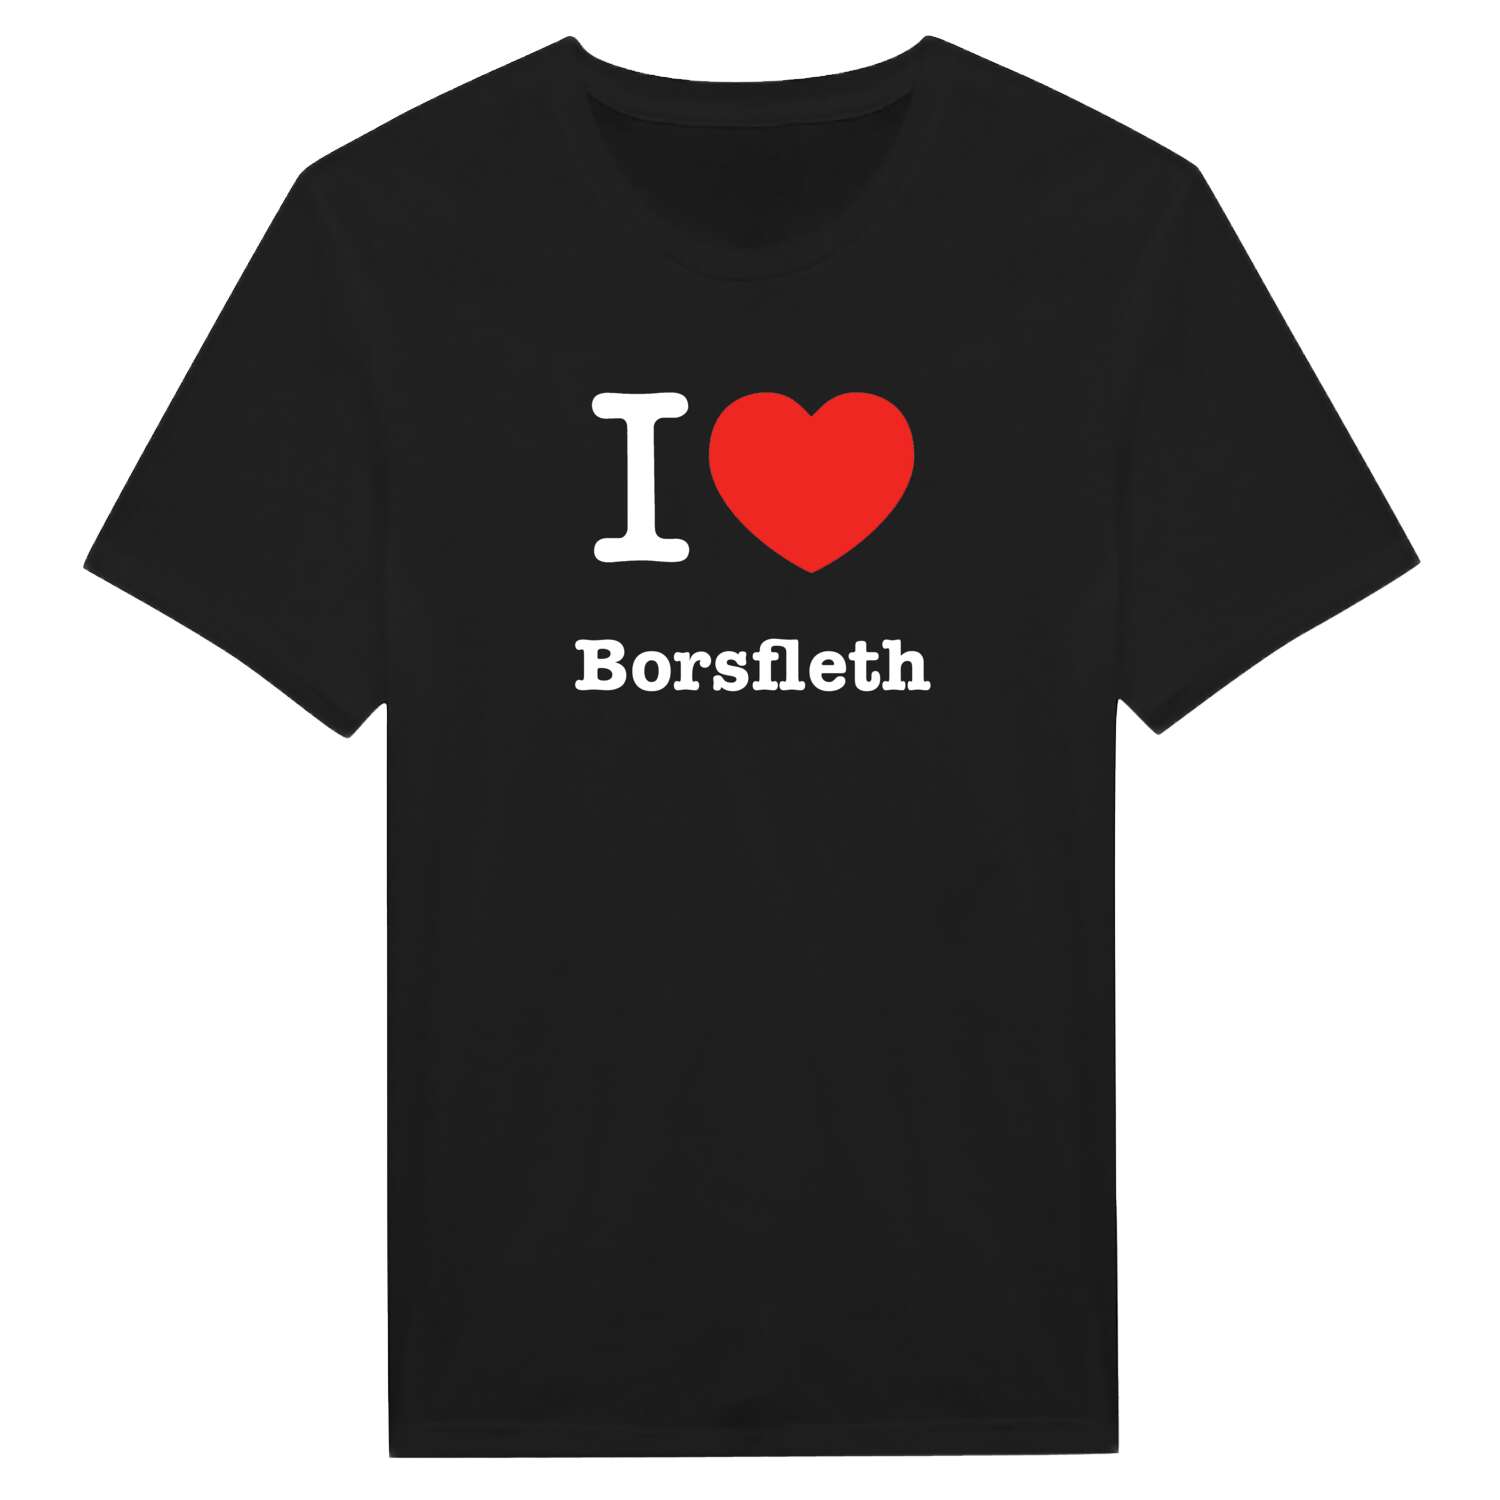 Borsfleth T-Shirt »I love«